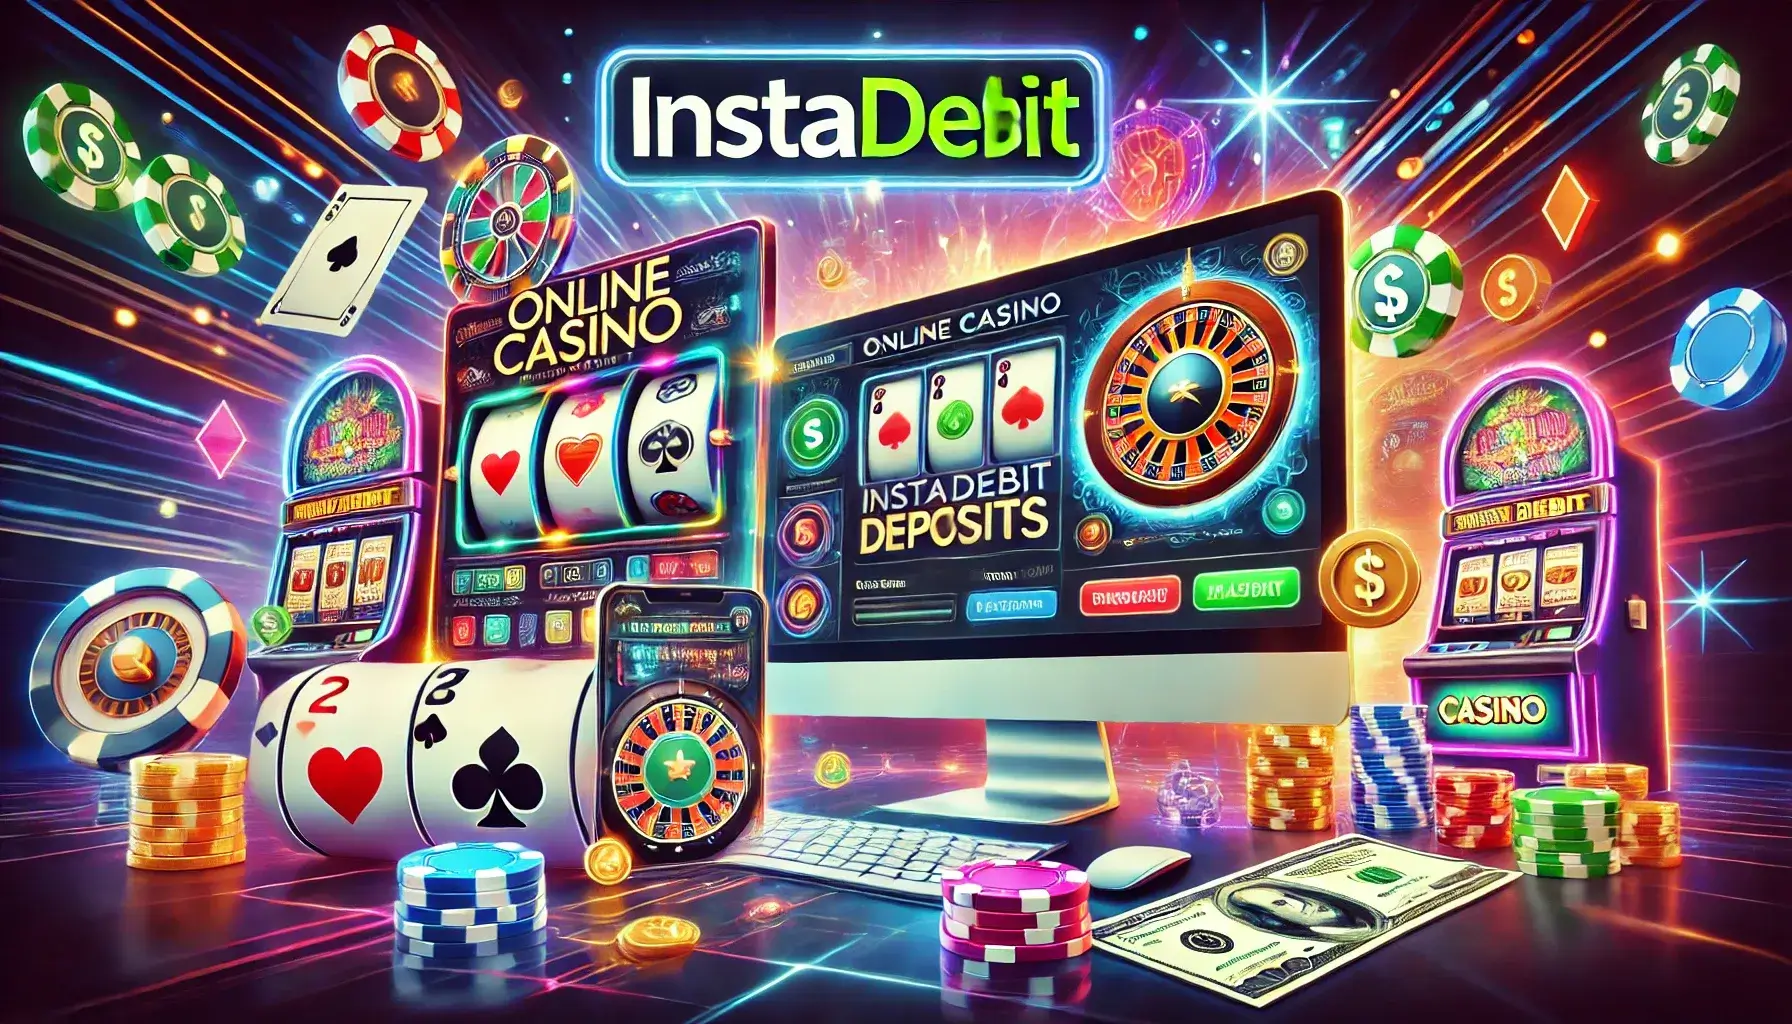 Online Casinos that Accept InstaDebit